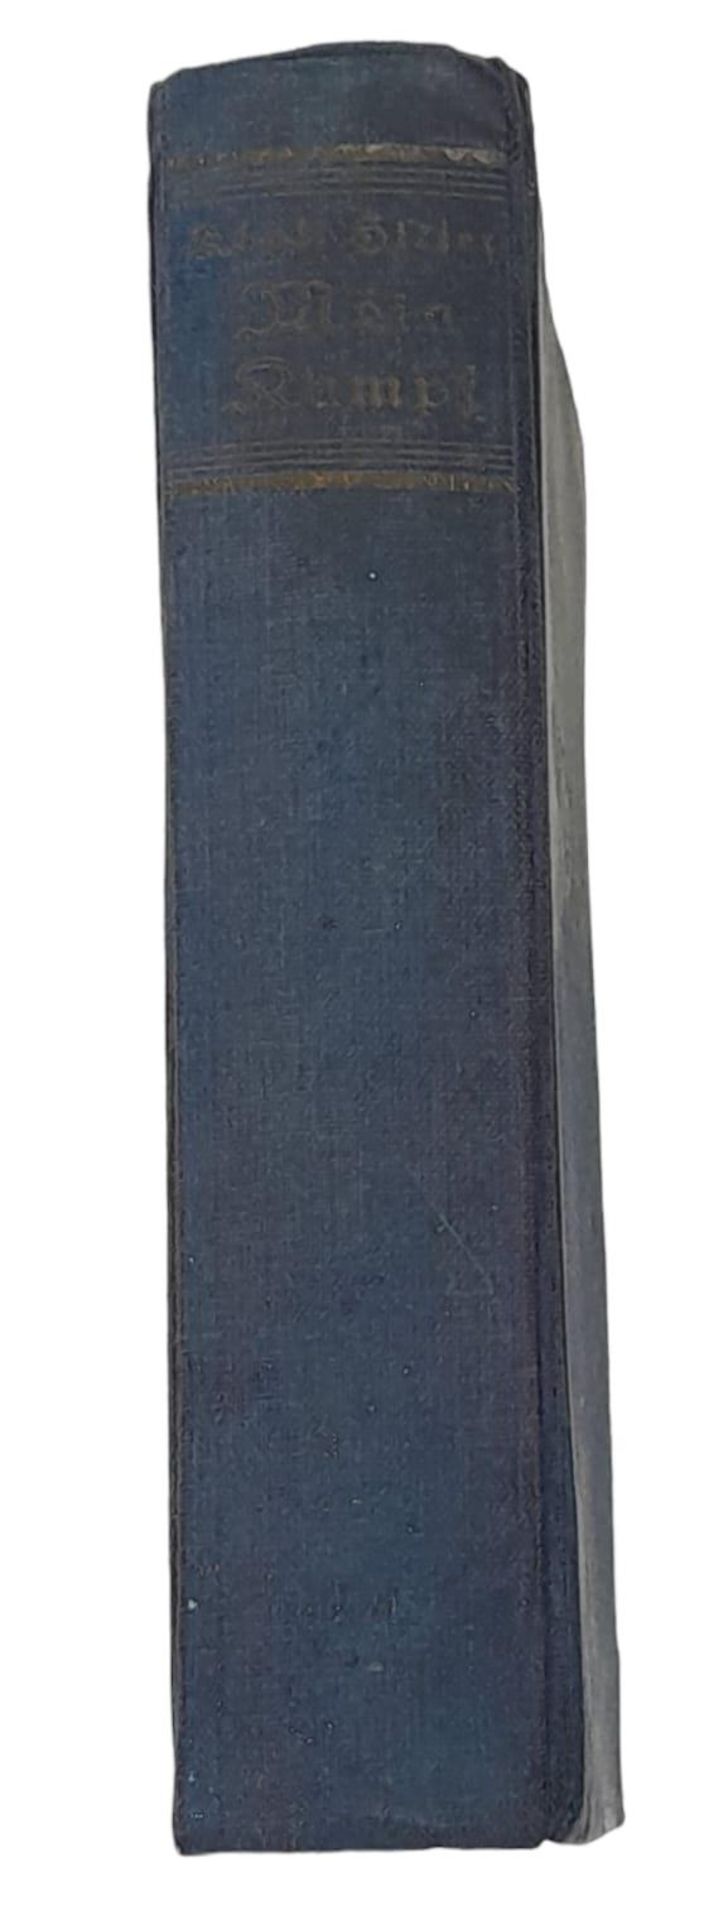 1938 German Edition of Mein Kampf. - Bild 2 aus 5